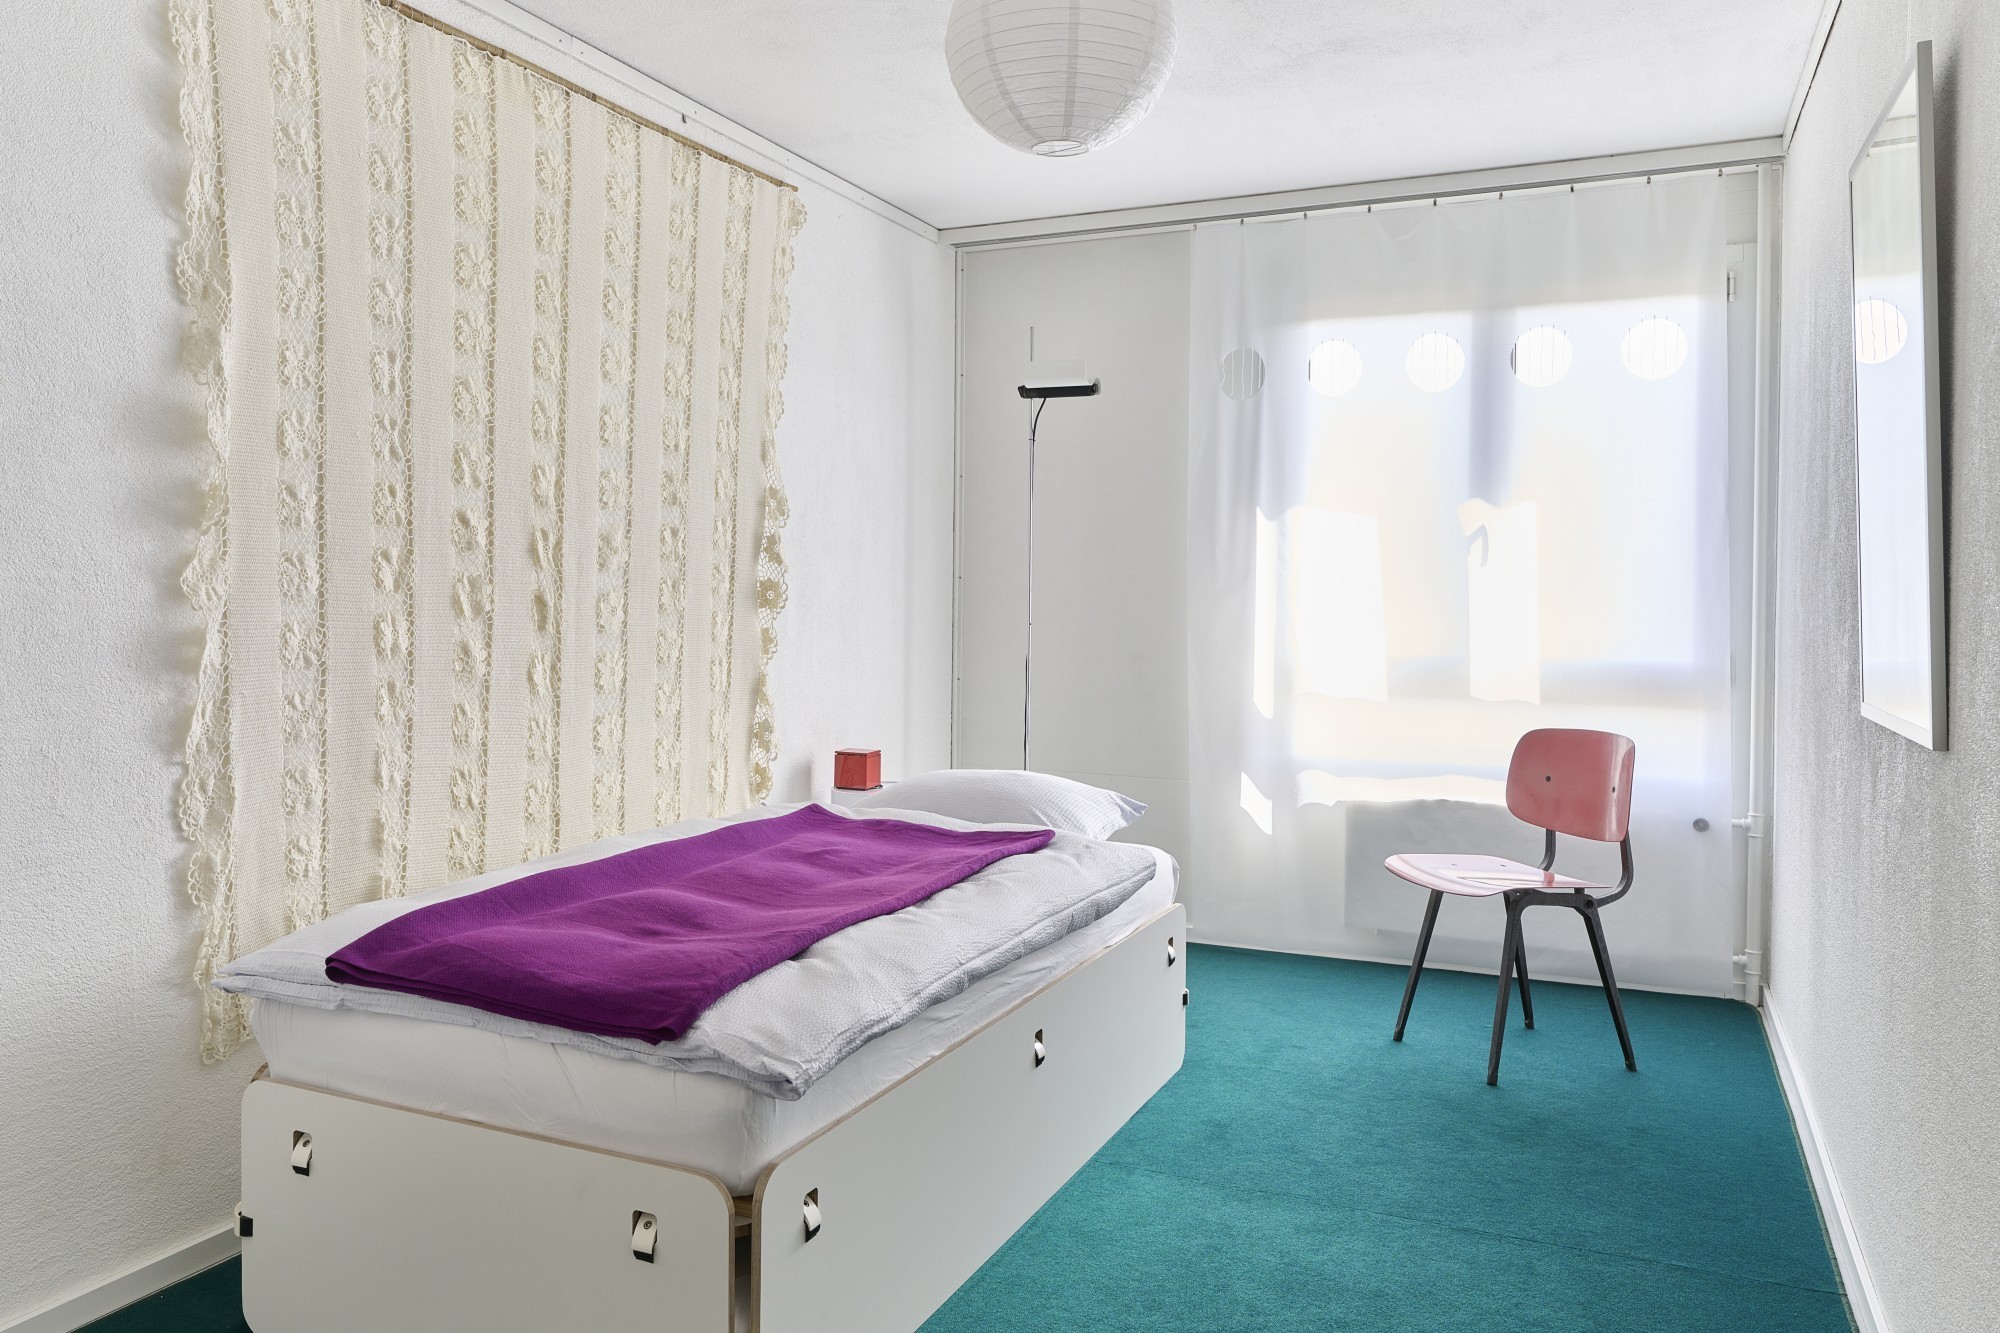 Les lits sont composés du système d'assemblage «Klem» et ce dernier a été utilisé à l'Académie des Arts de Berlin pour des expositions.